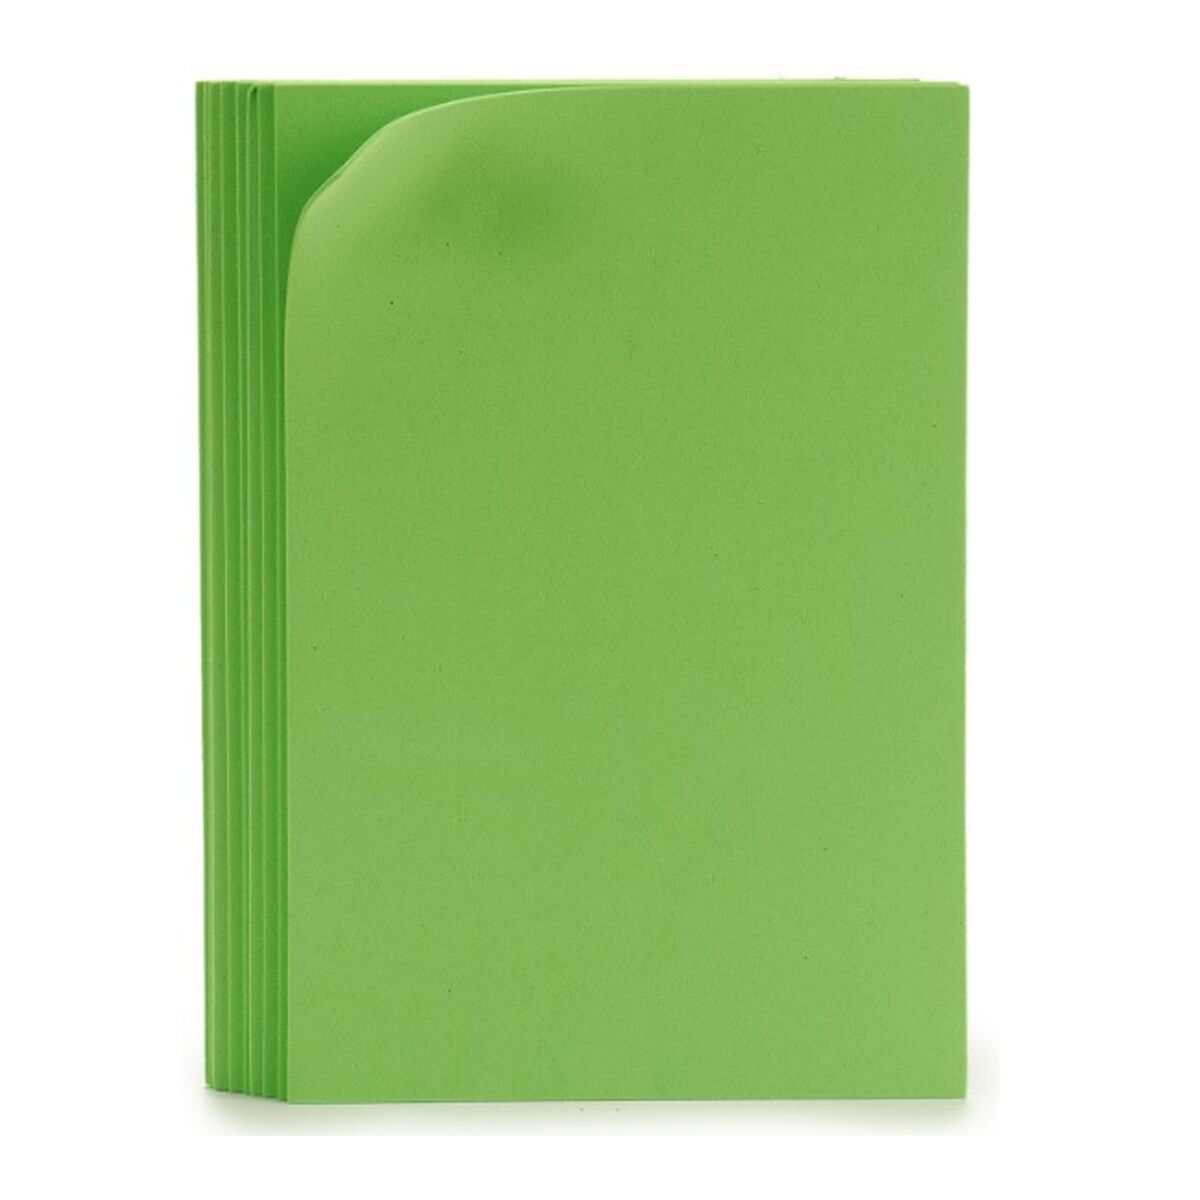 Eva-gummi Grön 30 x 2 x 20 cm (24 antal)-Kontor och Kontorsmaterial, Pappersprodukter för kontoret-Pincello-peaceofhome.se